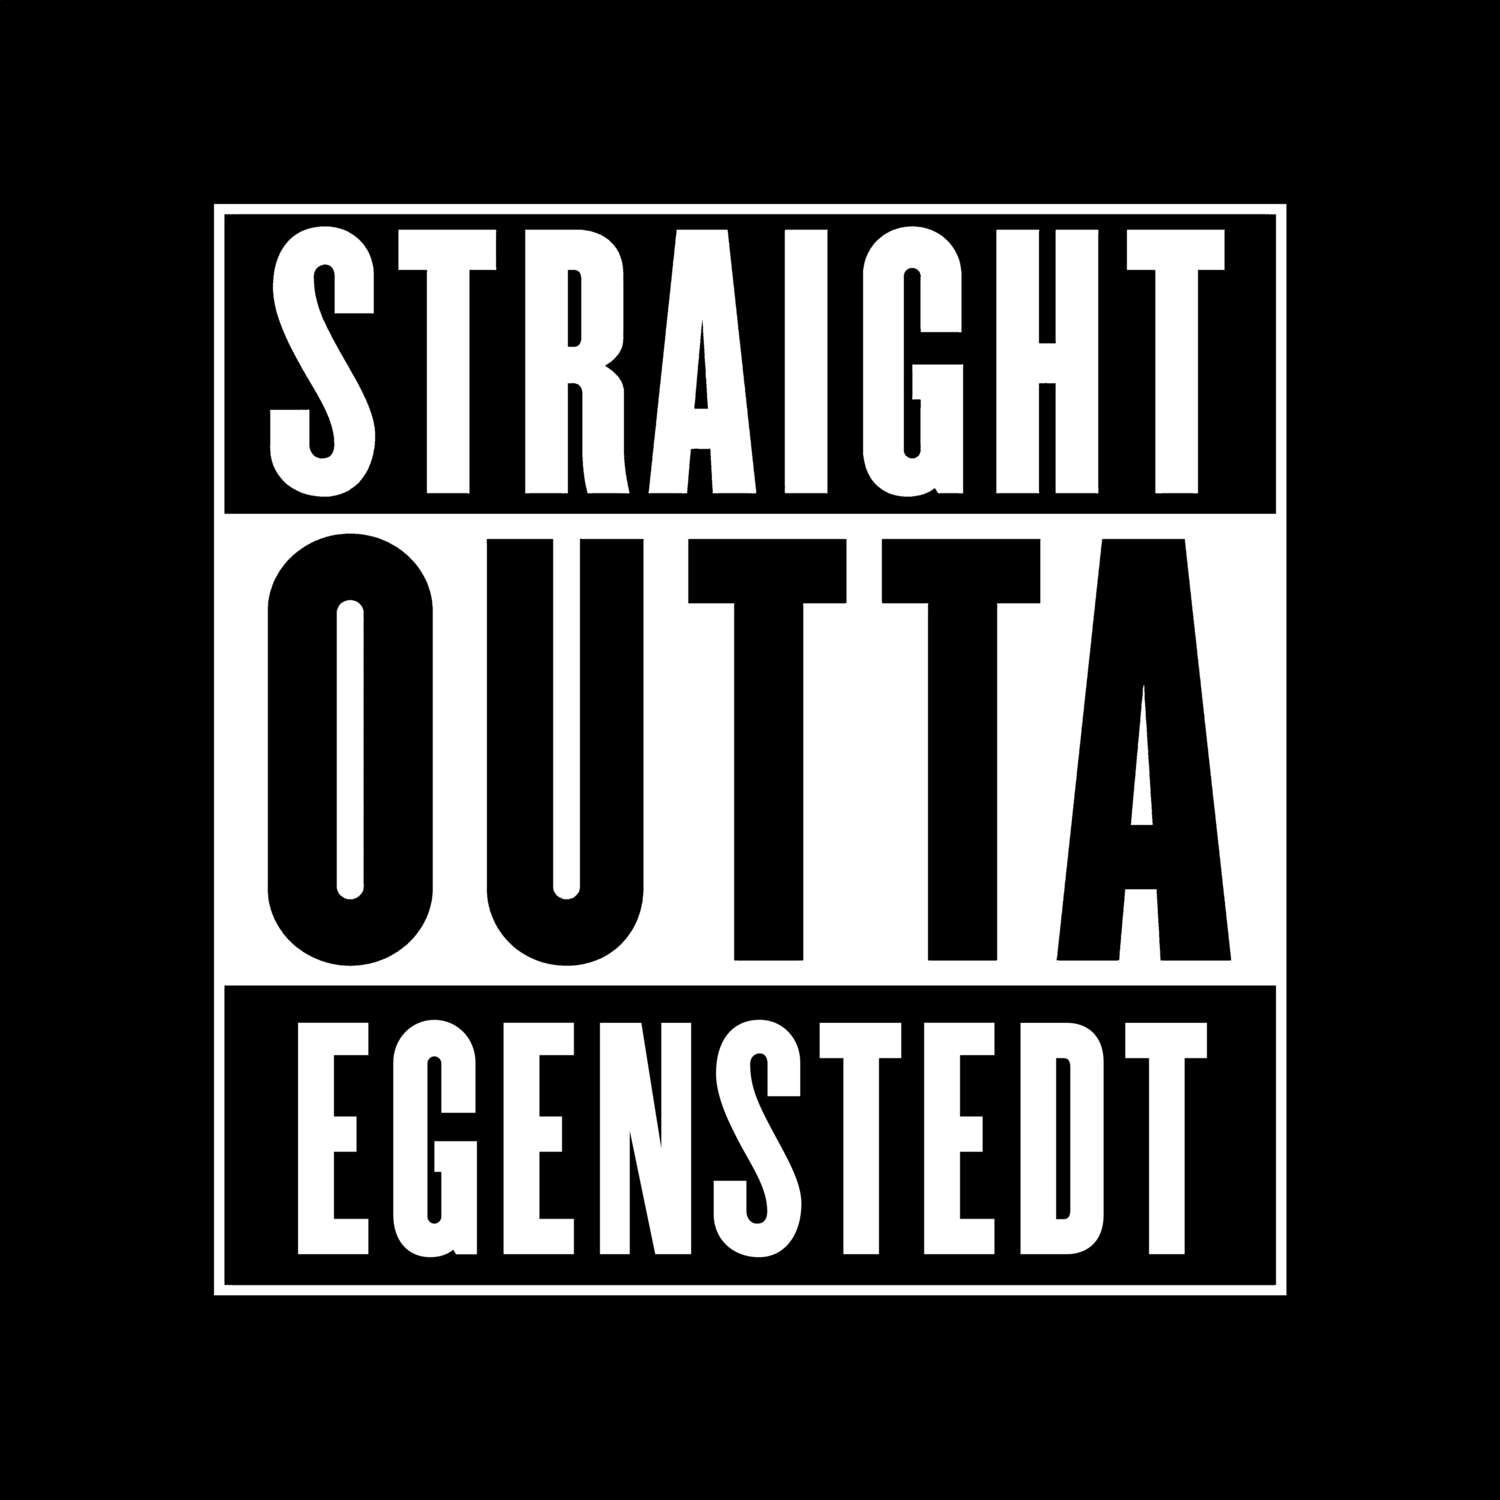 Egenstedt T-Shirt »Straight Outta«